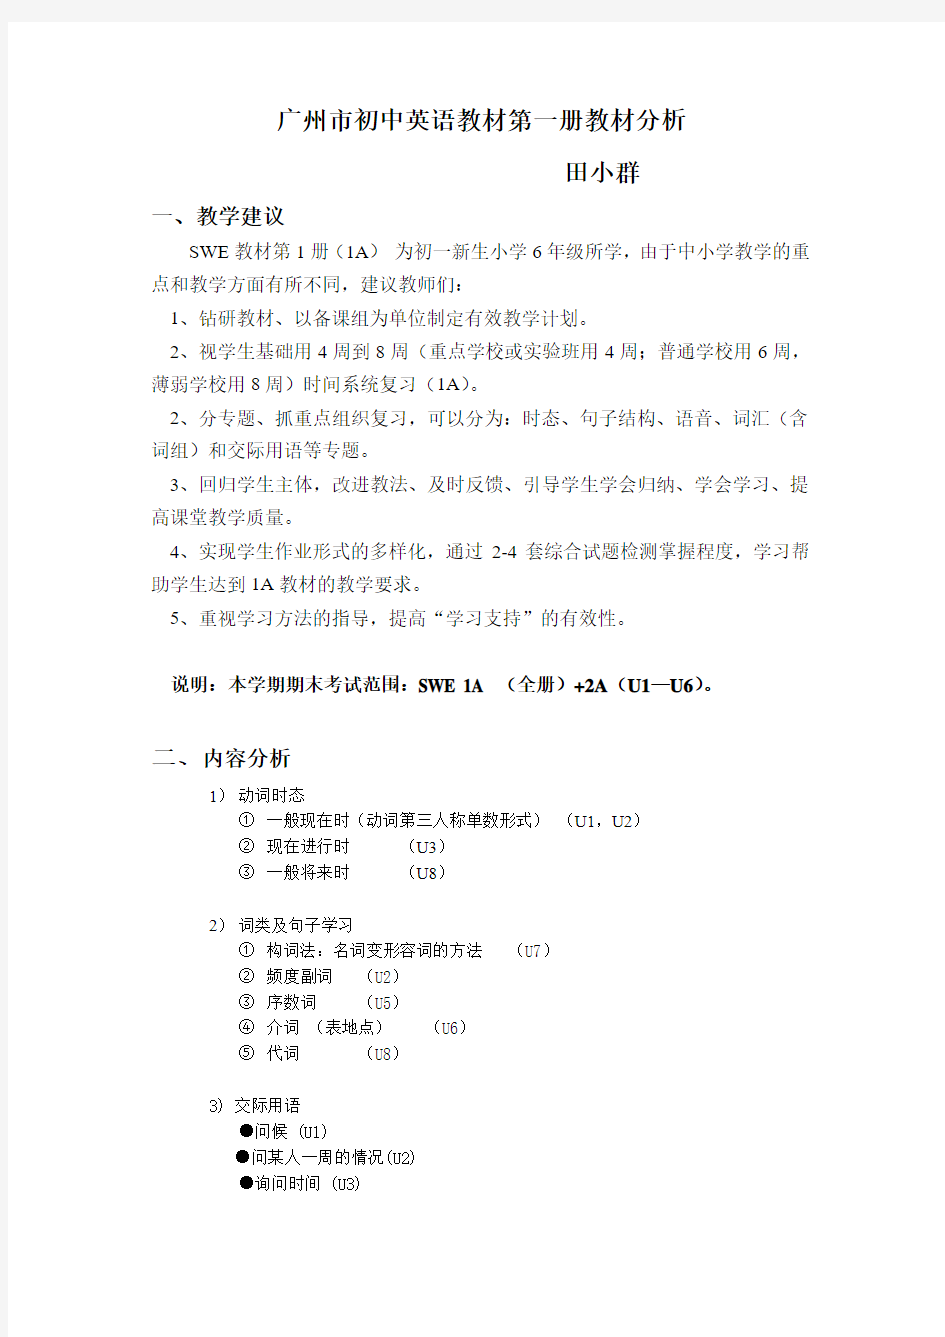 广州市初中英语教材第一册教材分析